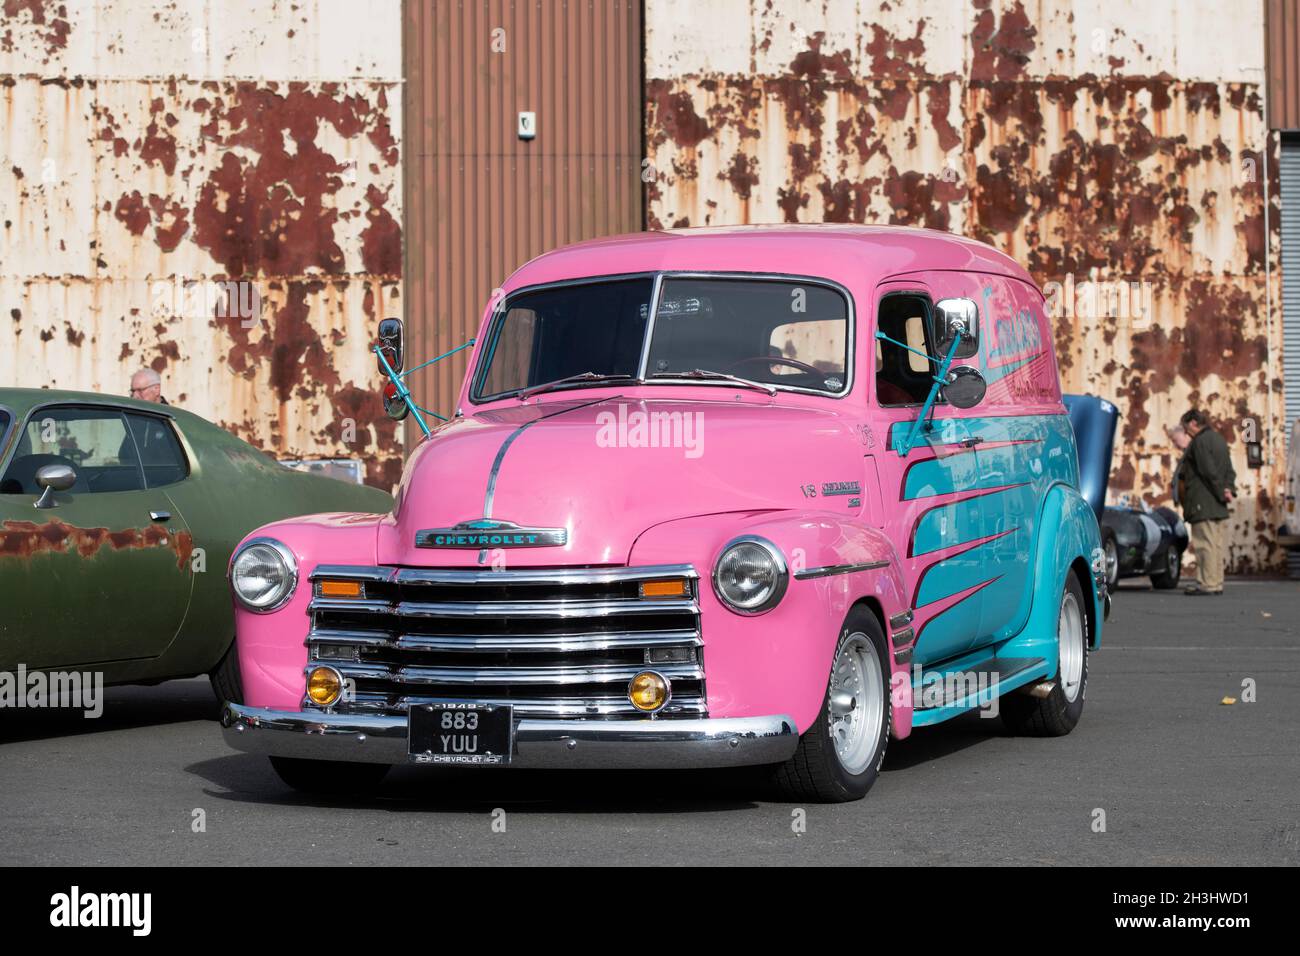 Custom american van immagini e fotografie stock ad alta risoluzione - Alamy